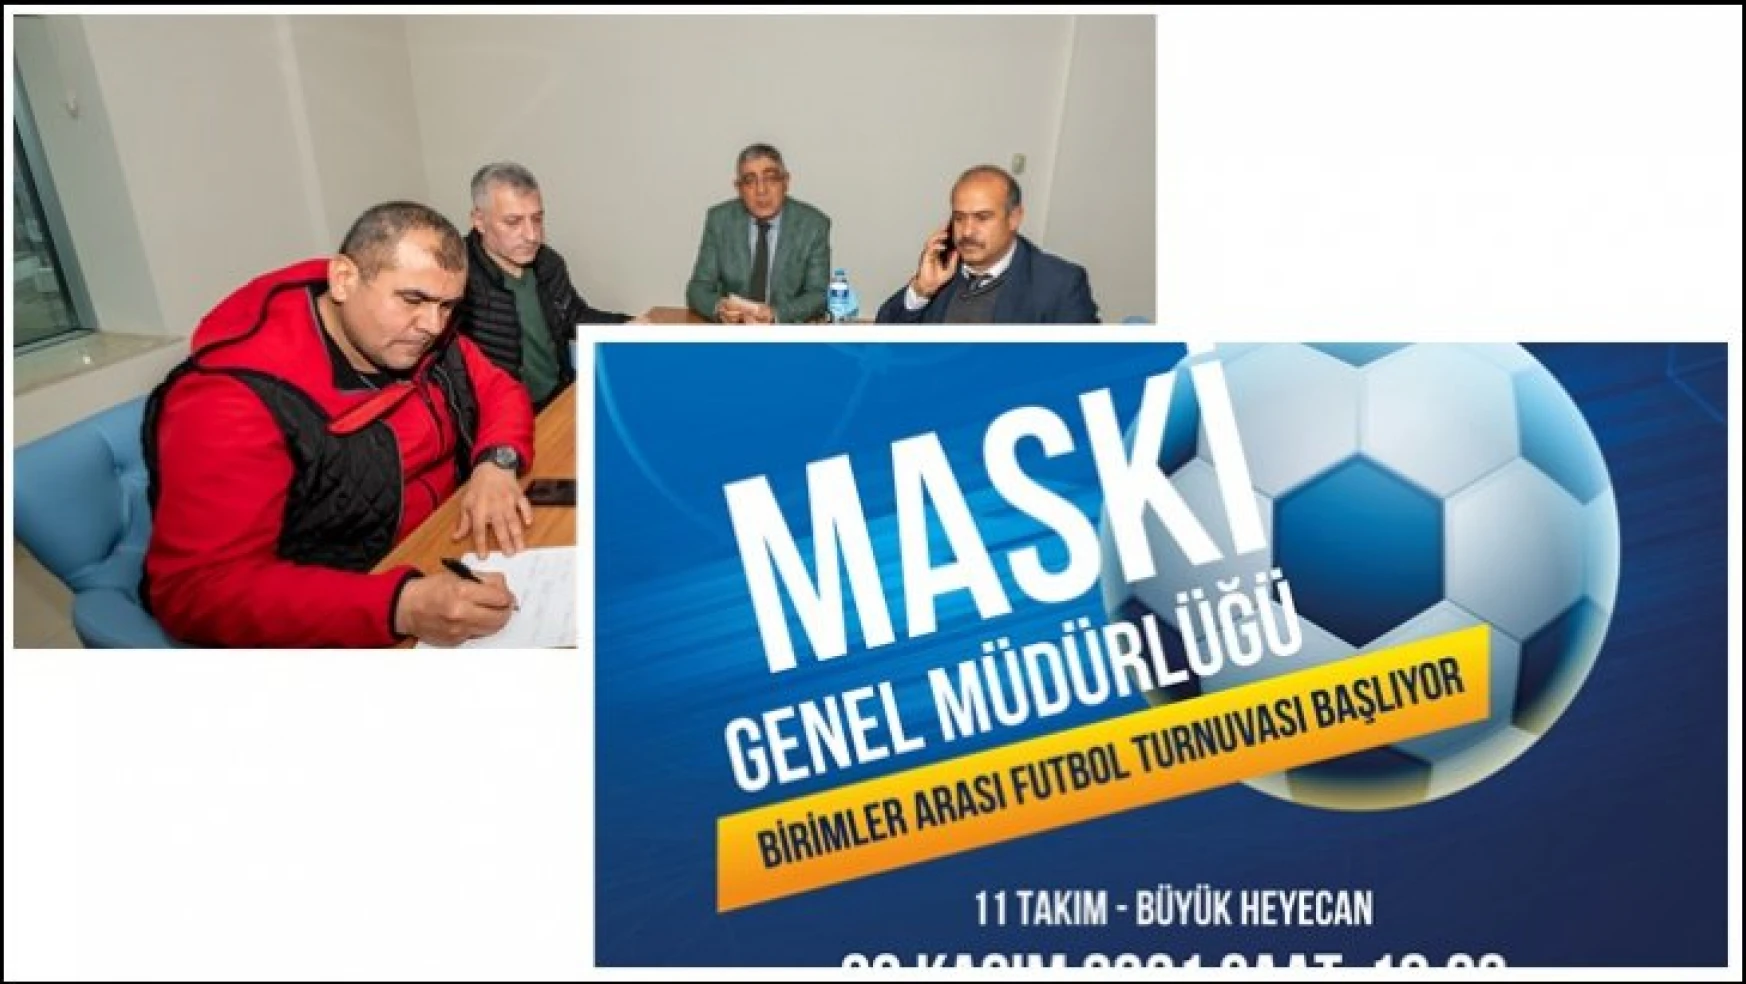 Maski, Birimler Arası Futbol Turnuvası Düzenliyor